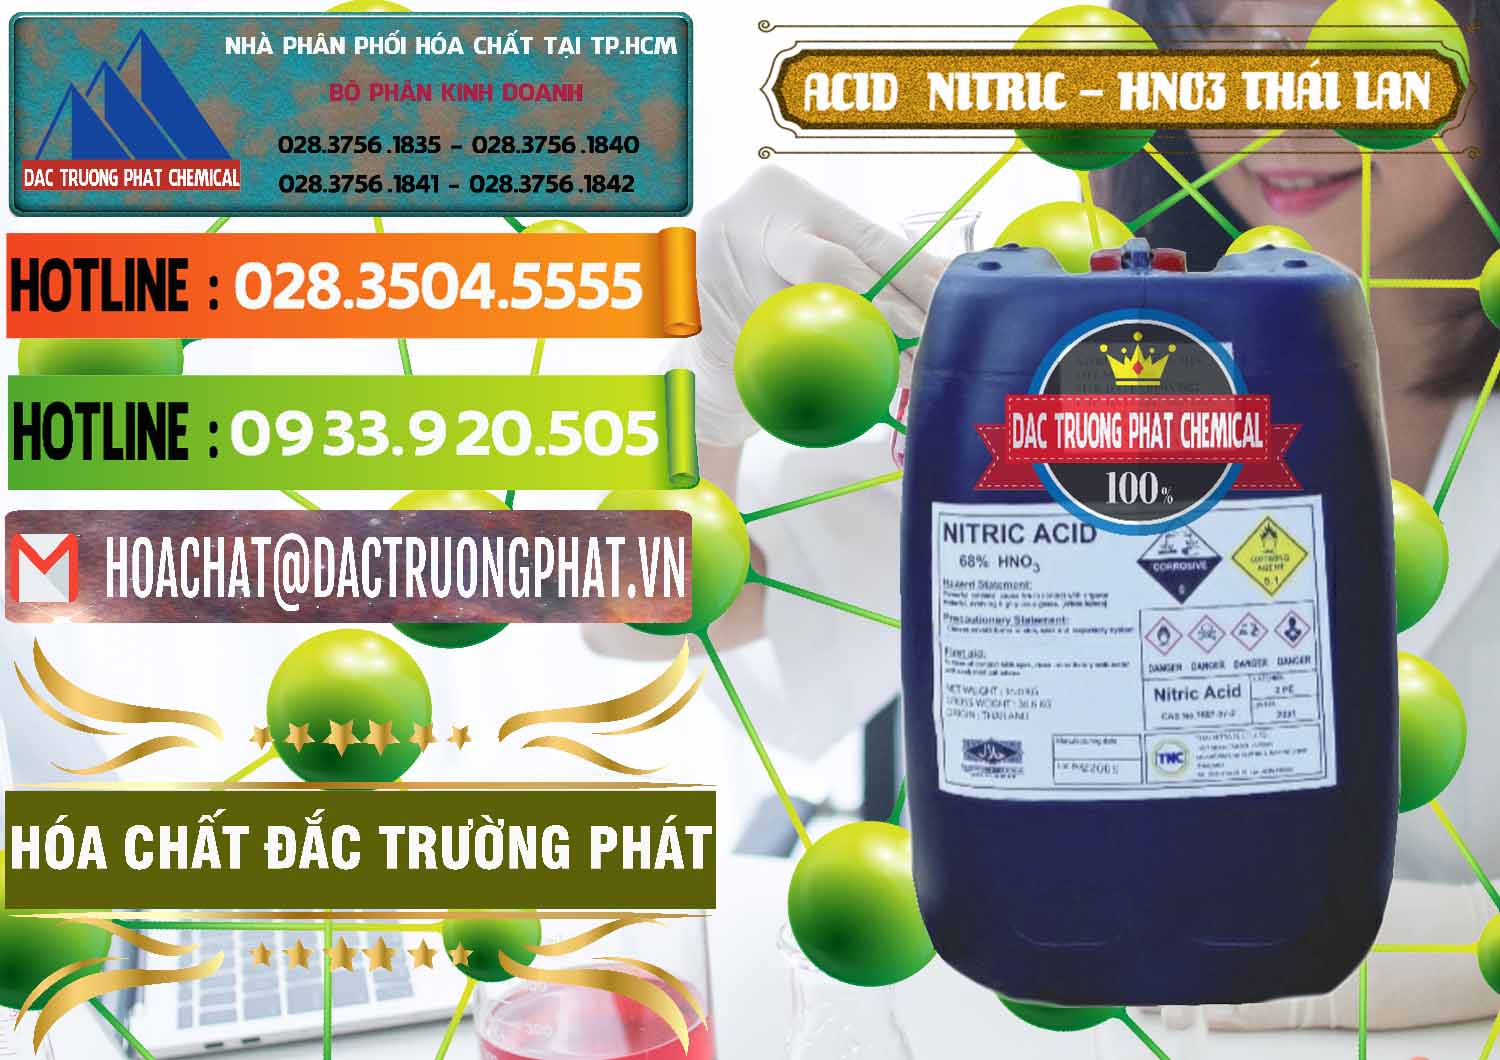 Chuyên bán & cung ứng Acid Nitric – Axit Nitric HNO3 Thái Lan Thailand - 0344 - Cty kinh doanh ( phân phối ) hóa chất tại TP.HCM - cungcaphoachat.com.vn